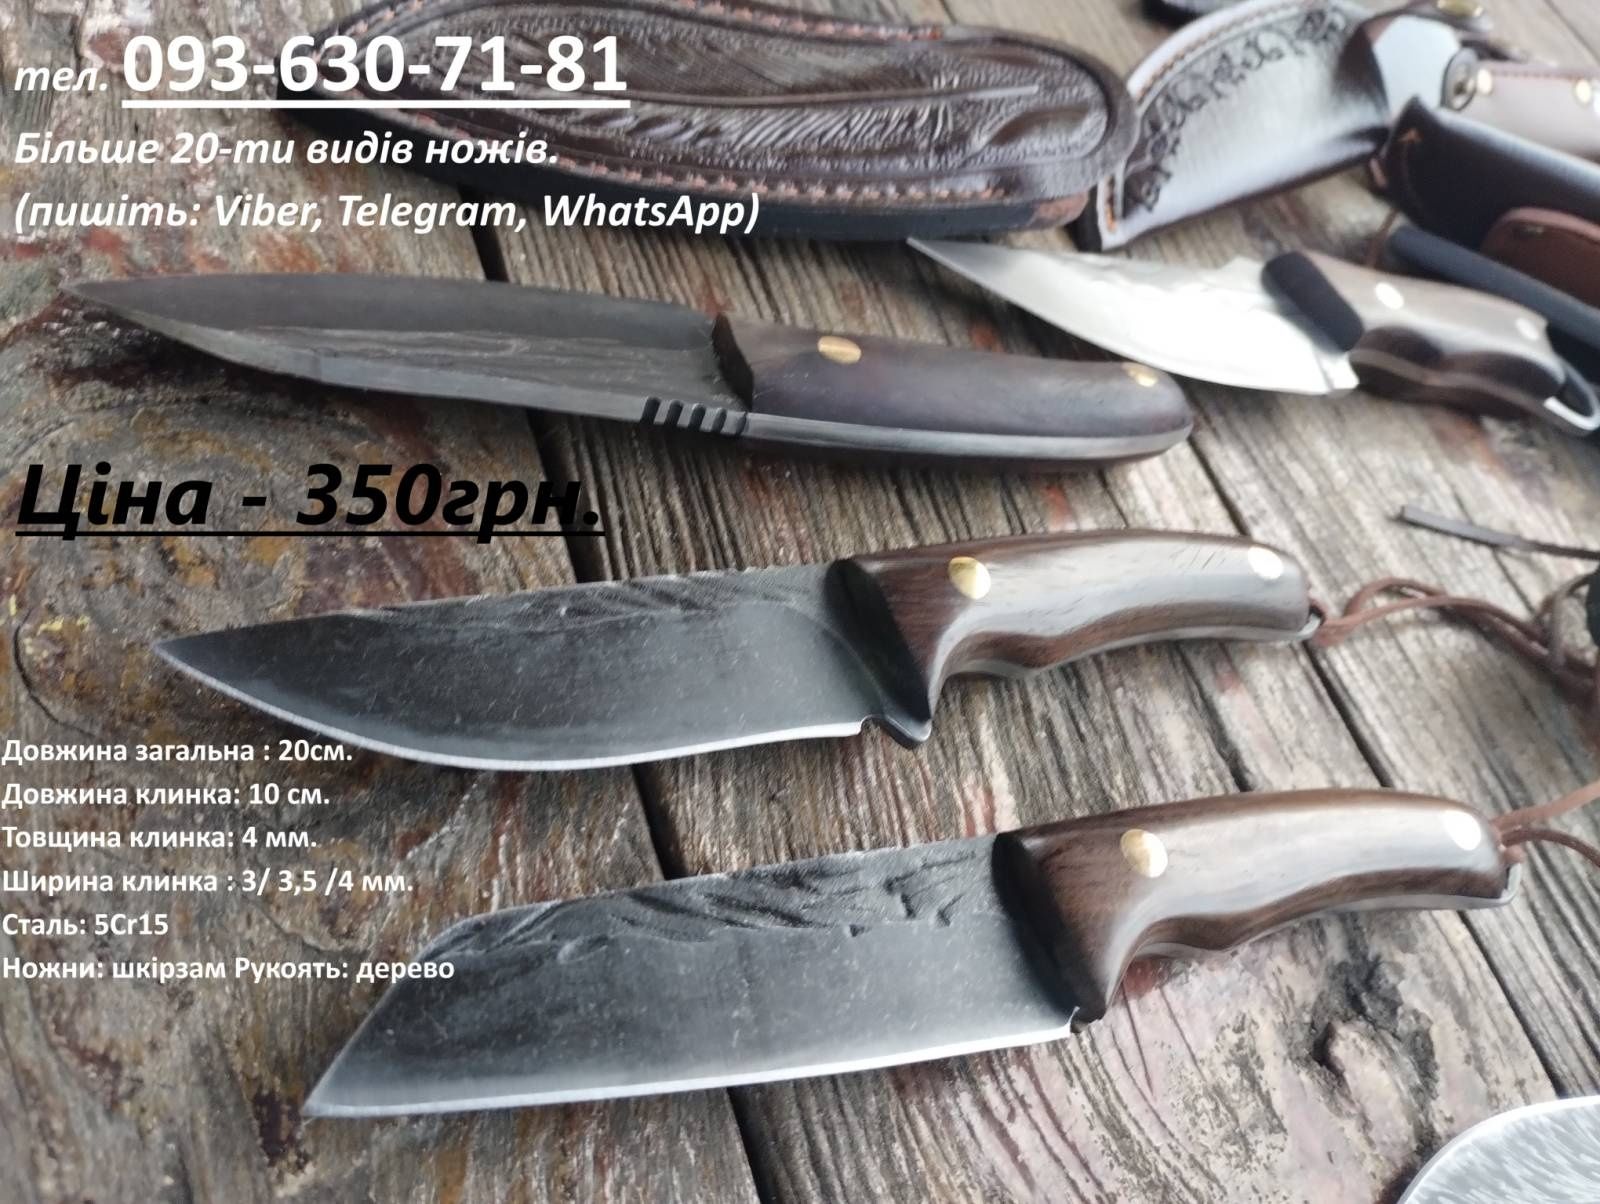 Ножі в наявності більше 20ти видів. (туристичний, кухонний).